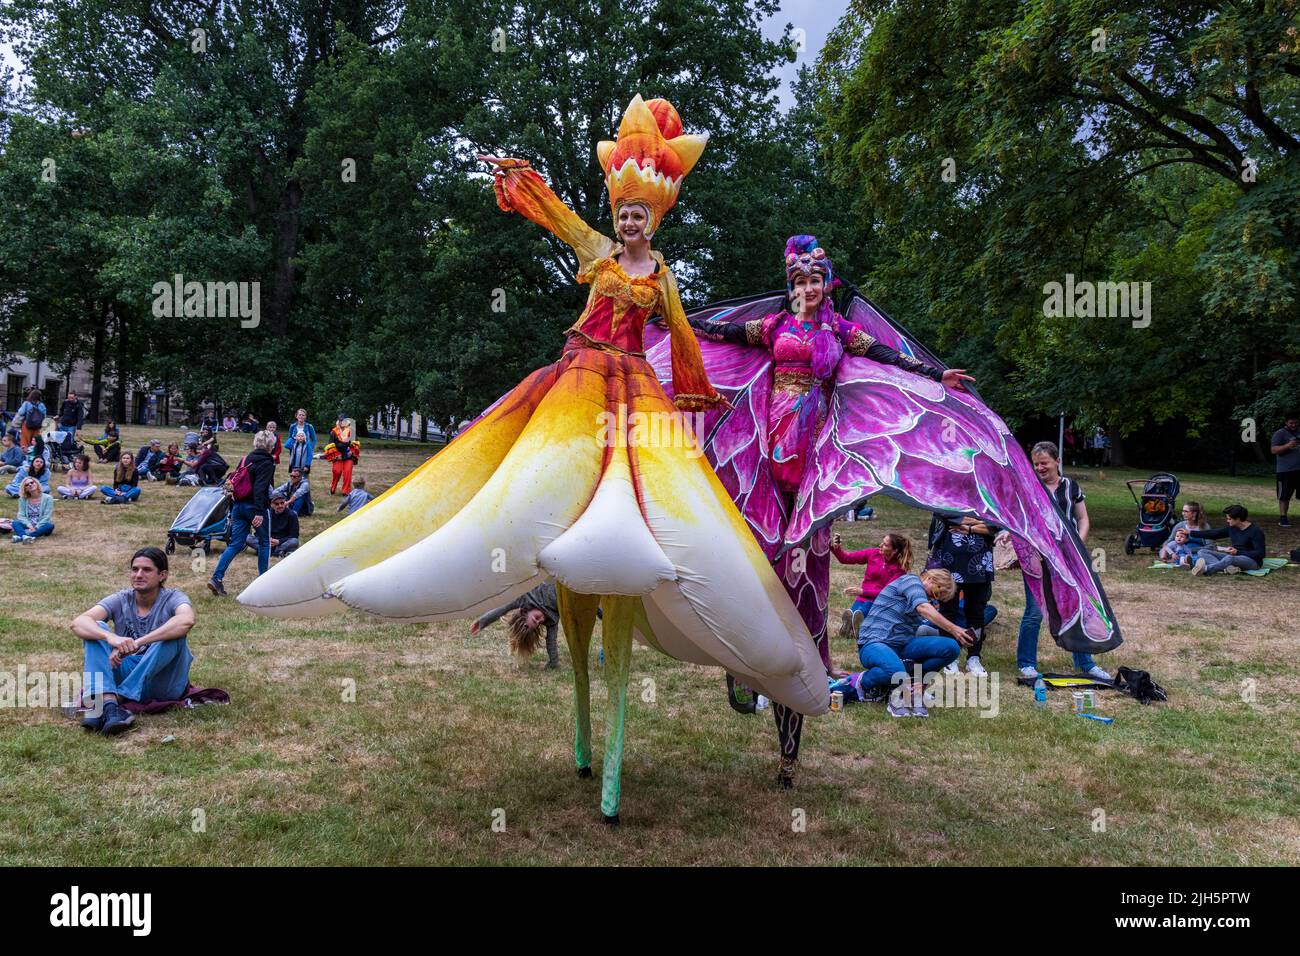 Carnaval de Brême avec des marcheurs à pilotis en costumes colorés, masques et rythmes de samba, Brême, Allemagne, Europe Banque D'Images